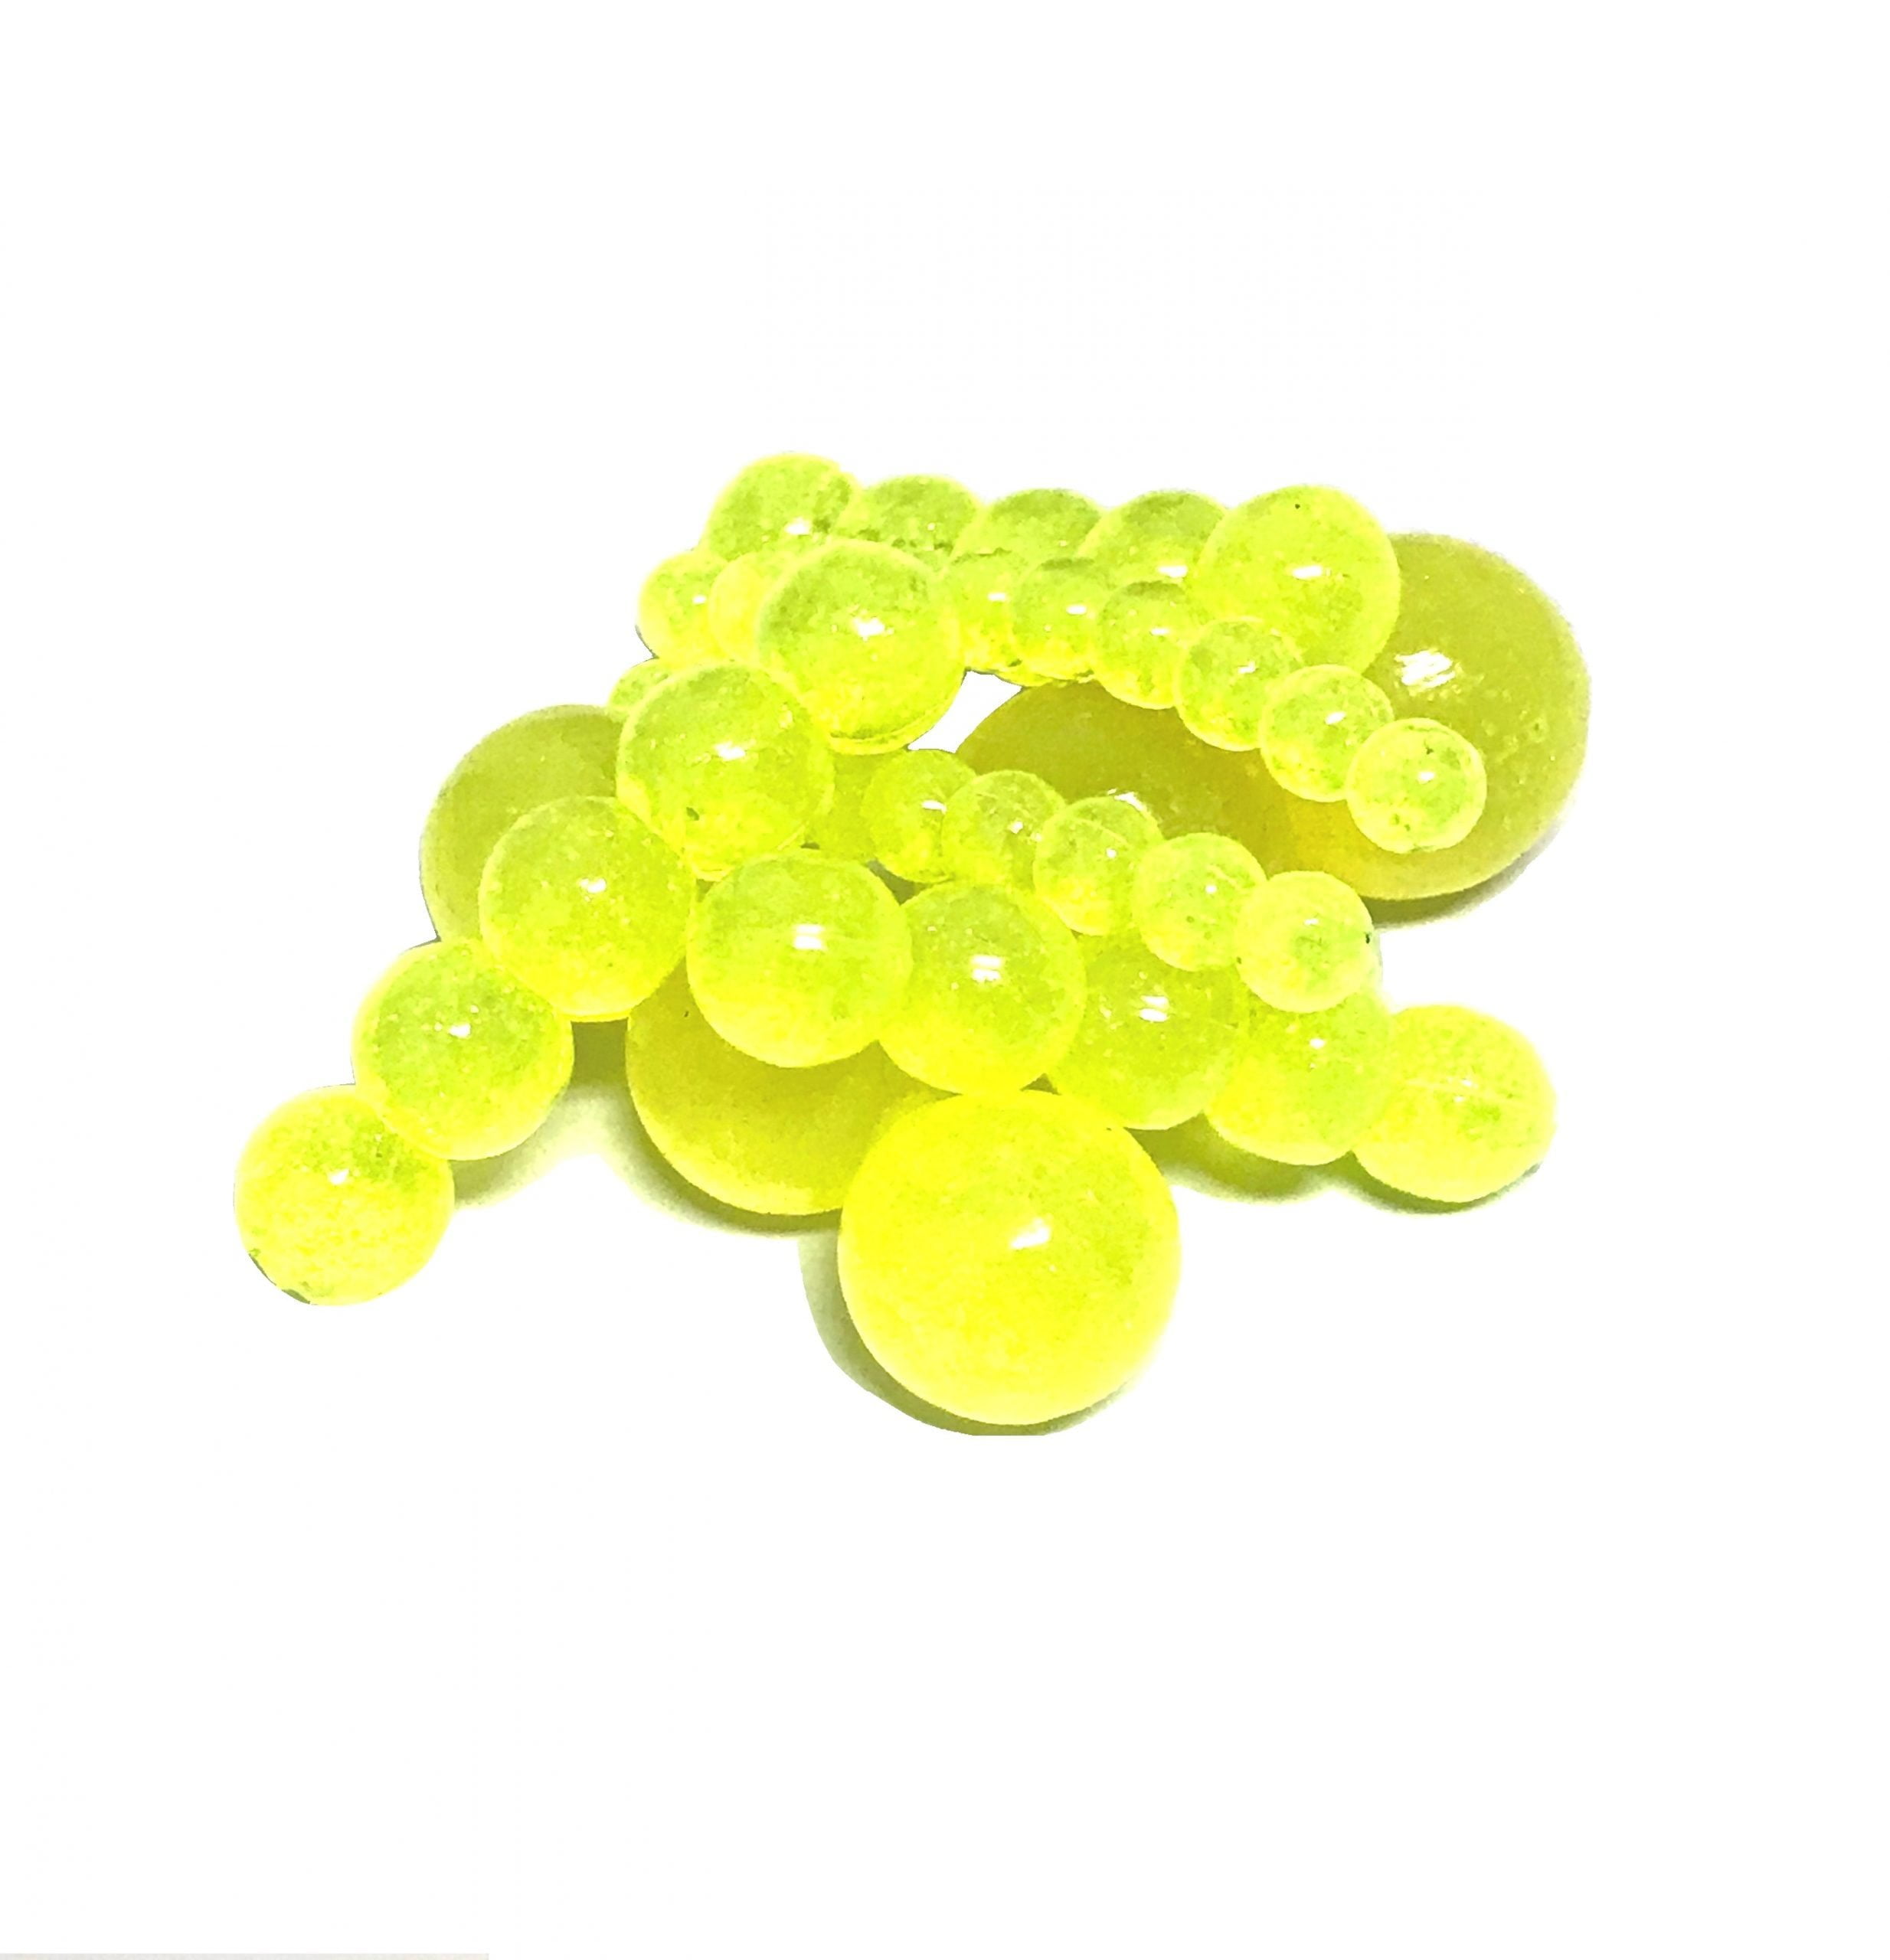 https://horkerbaits.com/wp-content/uploads/2020/04/Horker-Fish-Nuke-Monster-Chomps-Soft-beads--scaled.jpg